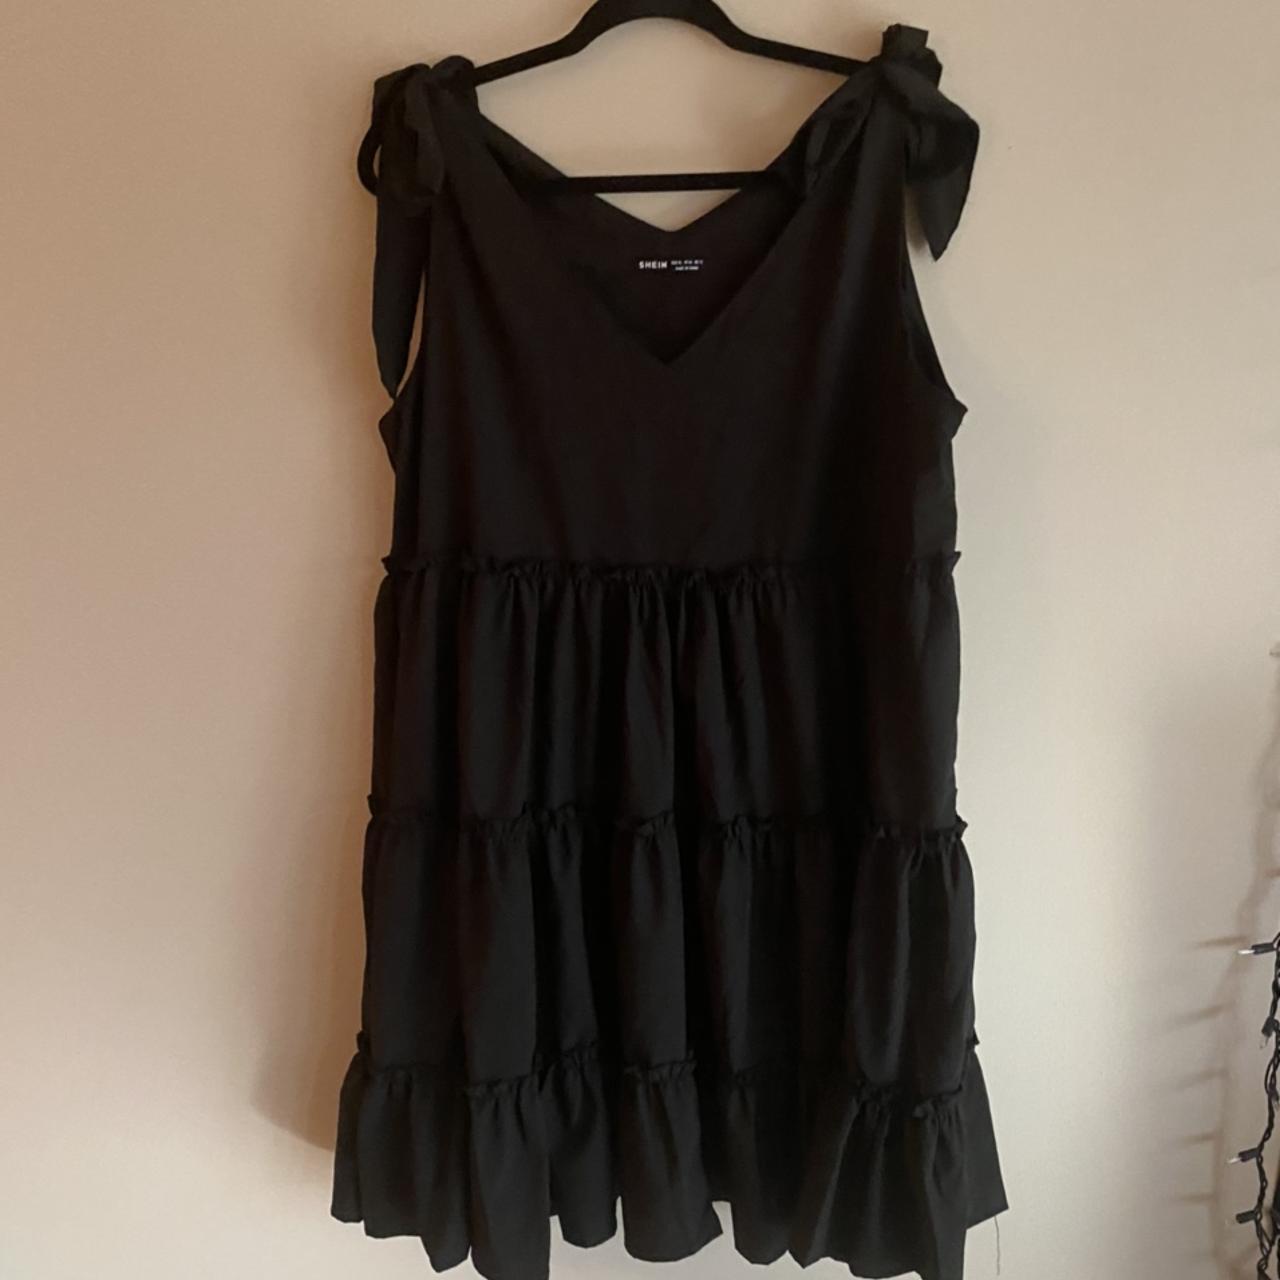 Black mini dress - Depop